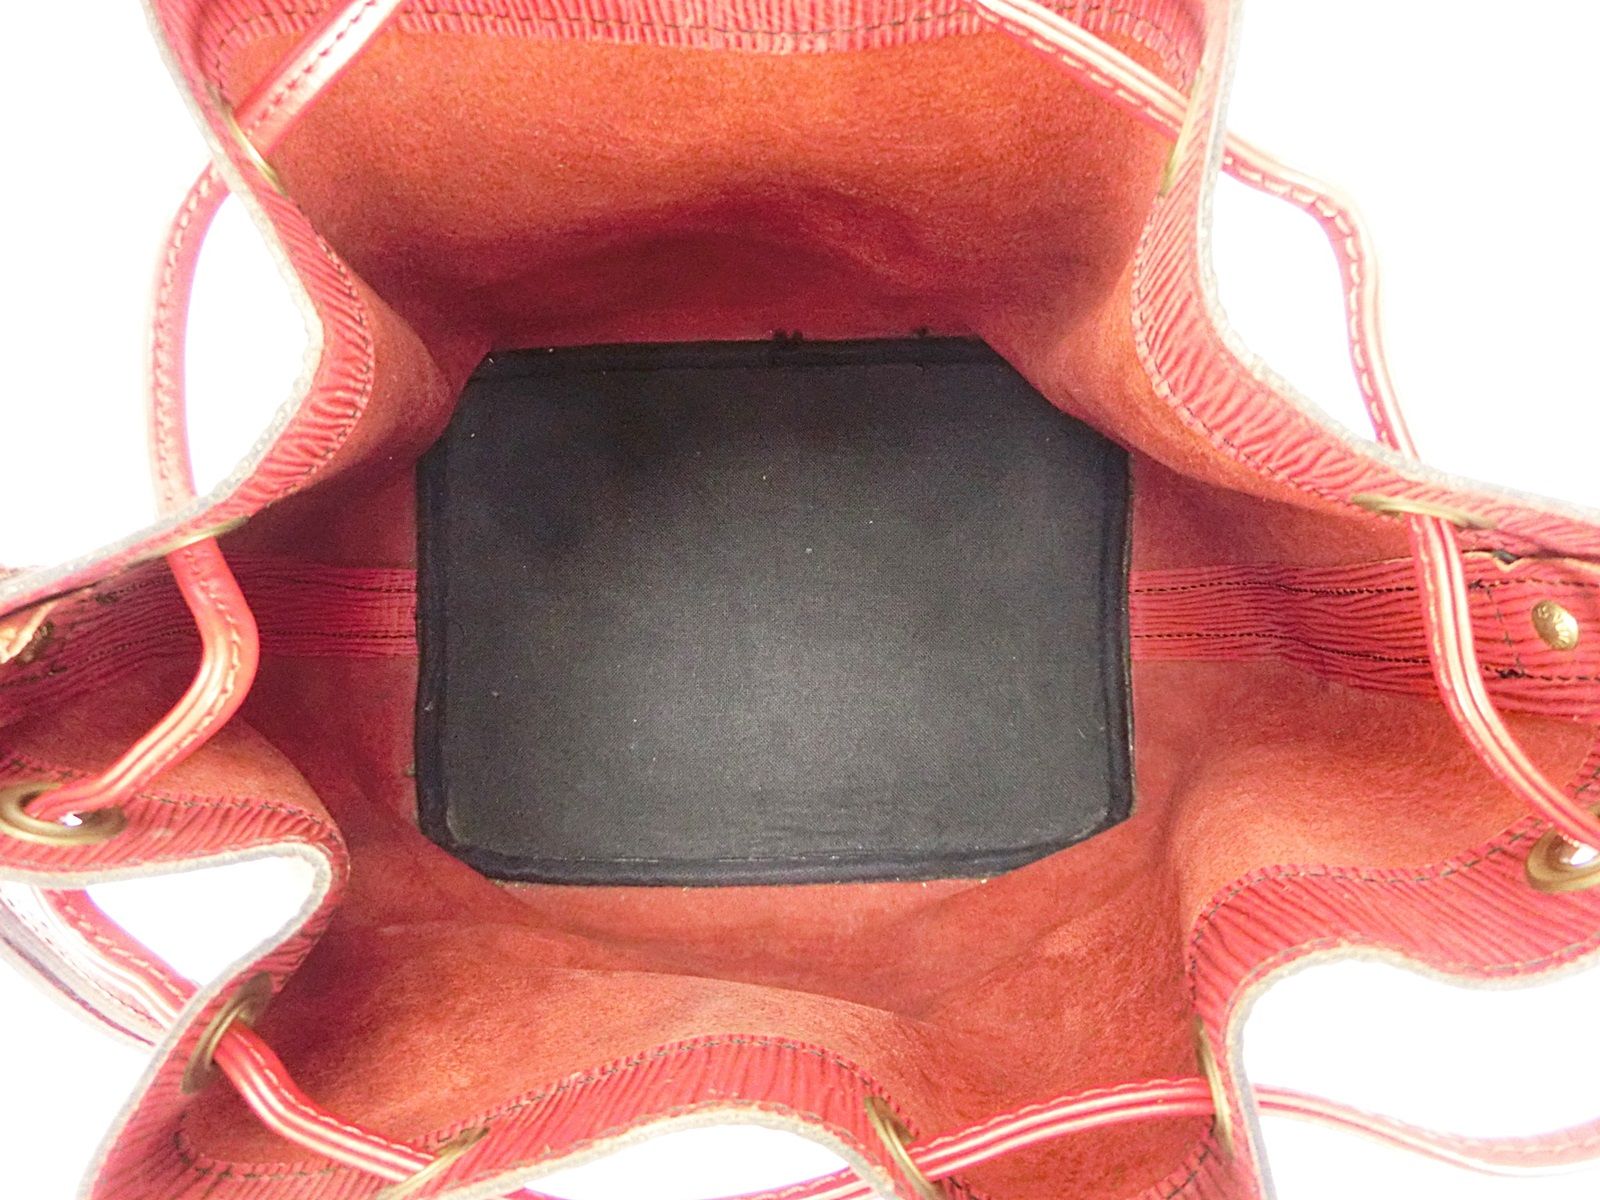 Louis Vuitton Red Epi Leather Petit Noé Bag, myGemma, FR